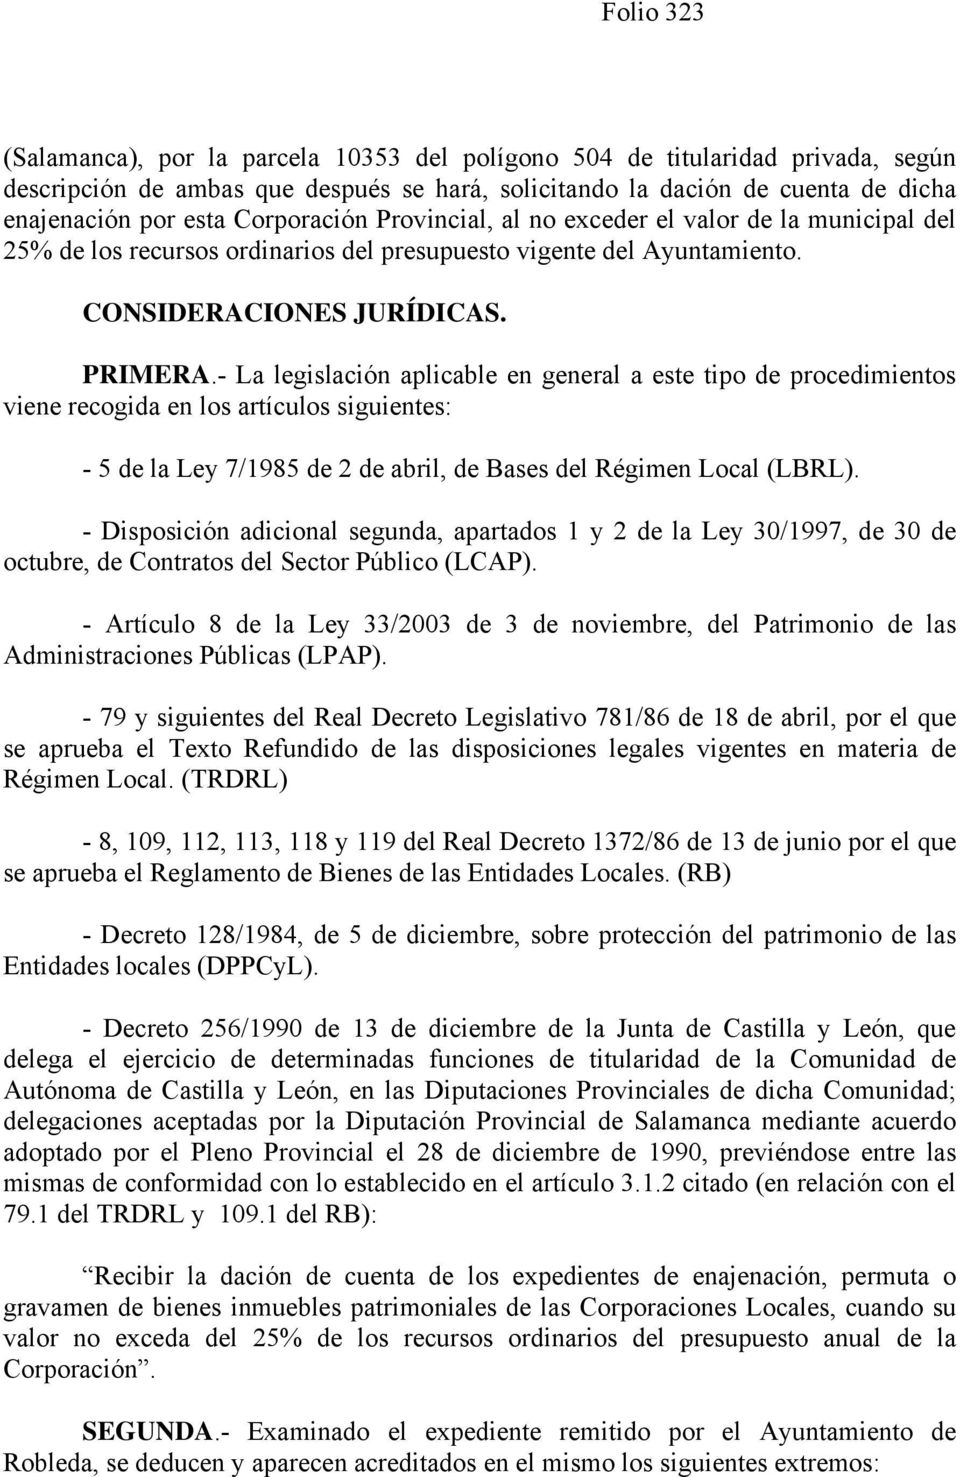 - La legislación aplicable en general a este tipo de procedimientos viene recogida en los artículos siguientes: - 5 de la Ley 7/1985 de 2 de abril, de Bases del Régimen Local (LBRL).